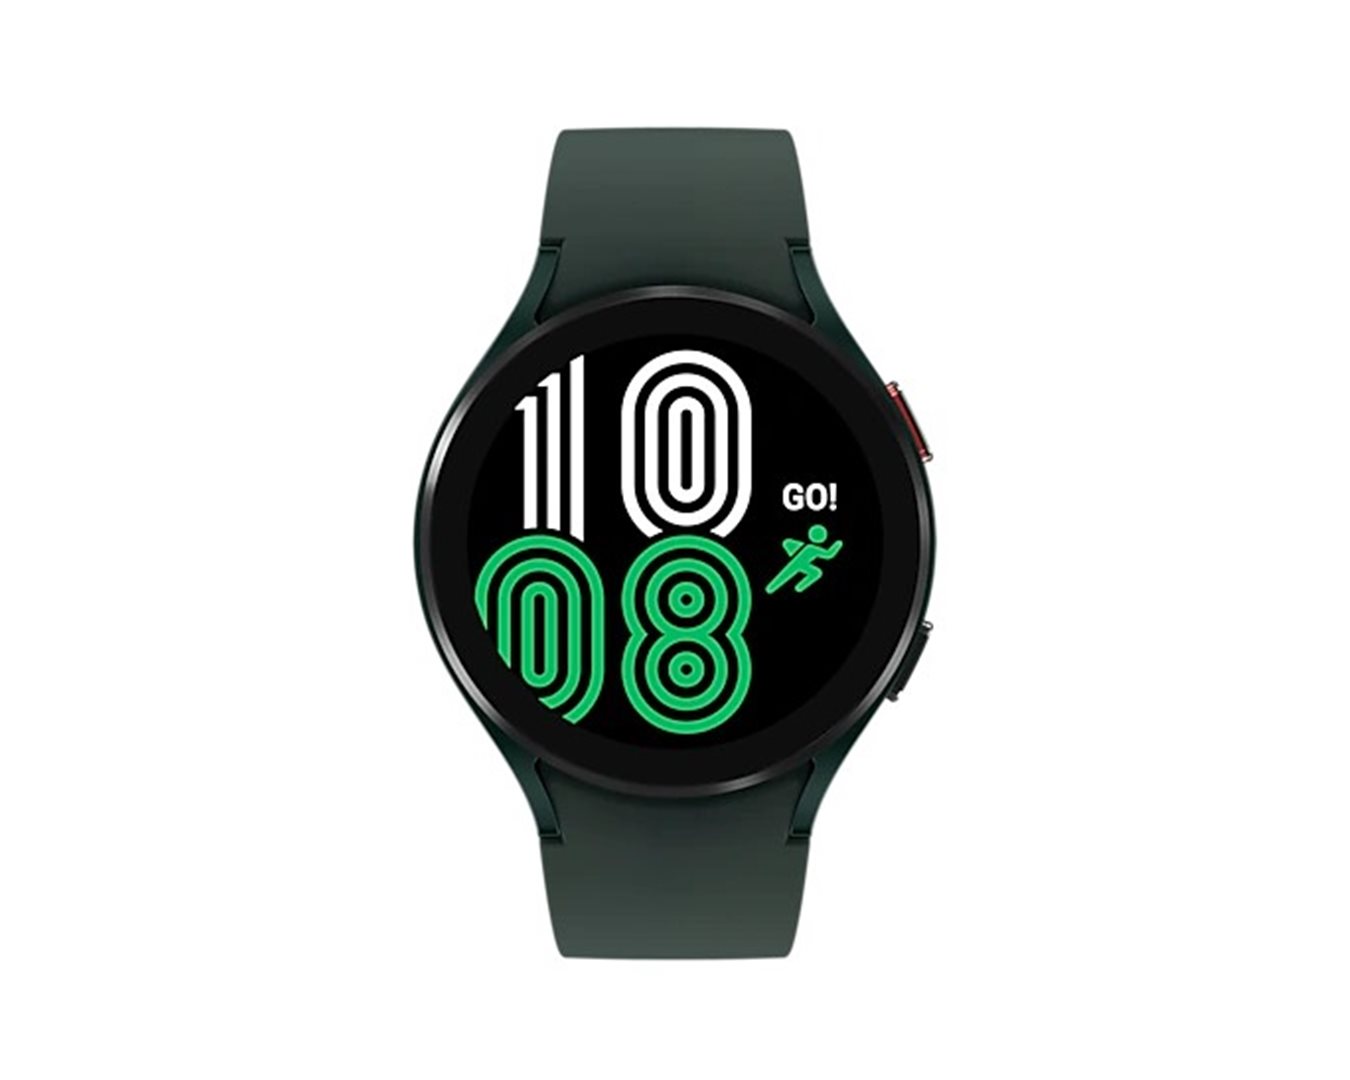 Samsung Galaxy Watch4 LTE 44mm zelená